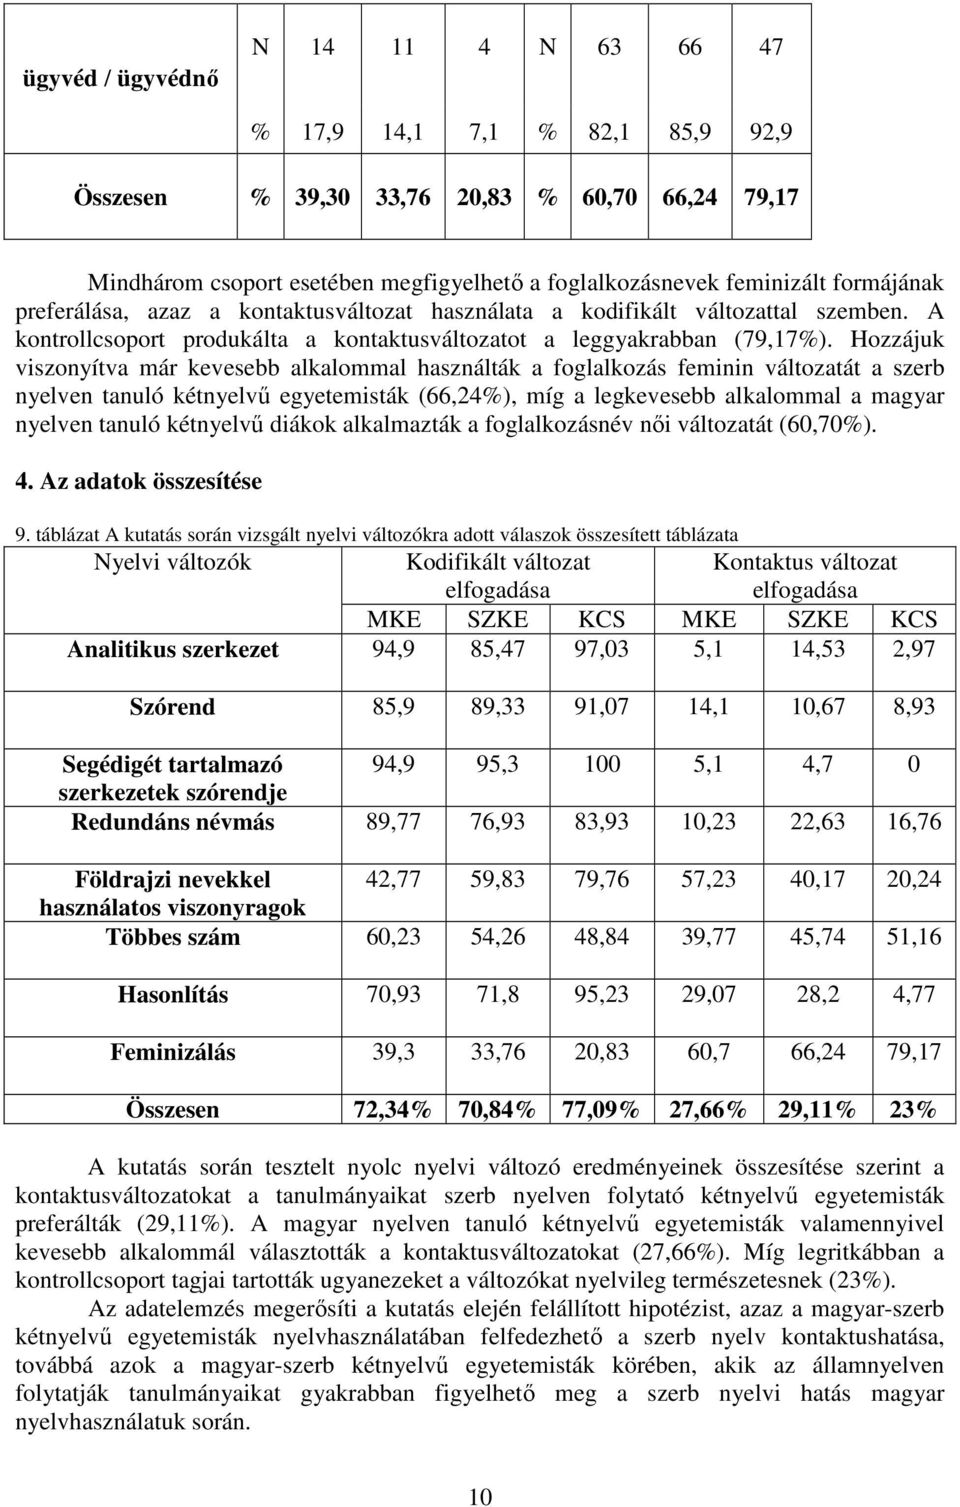 Hozzájuk viszonyítva már kevesebb alkalommal használták a foglalkozás feminin változatát a szerb nyelven tanuló kétnyelvű egyetemisták (66,), míg a legkevesebb alkalommal a magyar nyelven tanuló